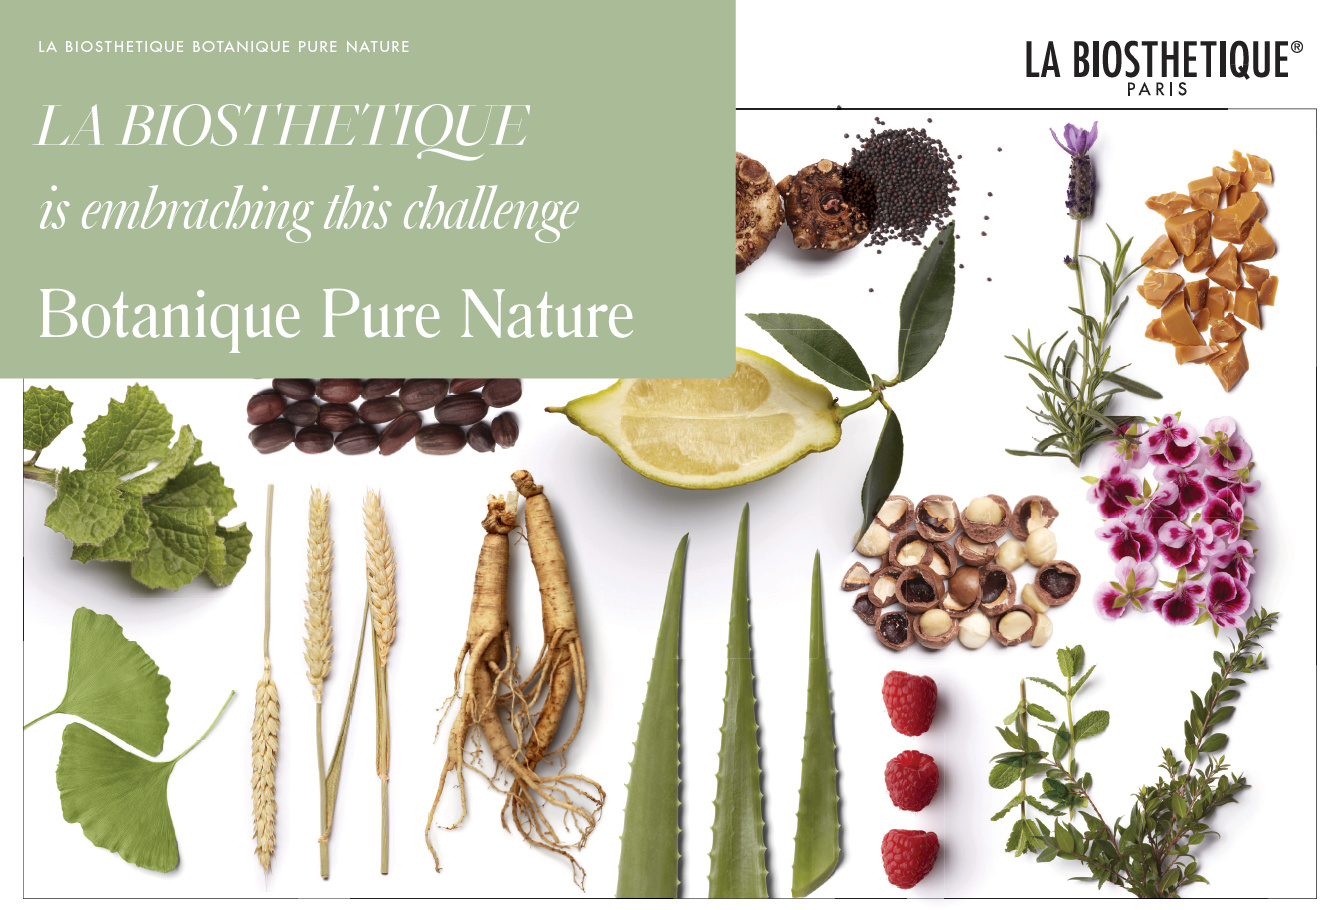 Botanique Pure Nature by La Biosthetique Paris is Embracing this challenge